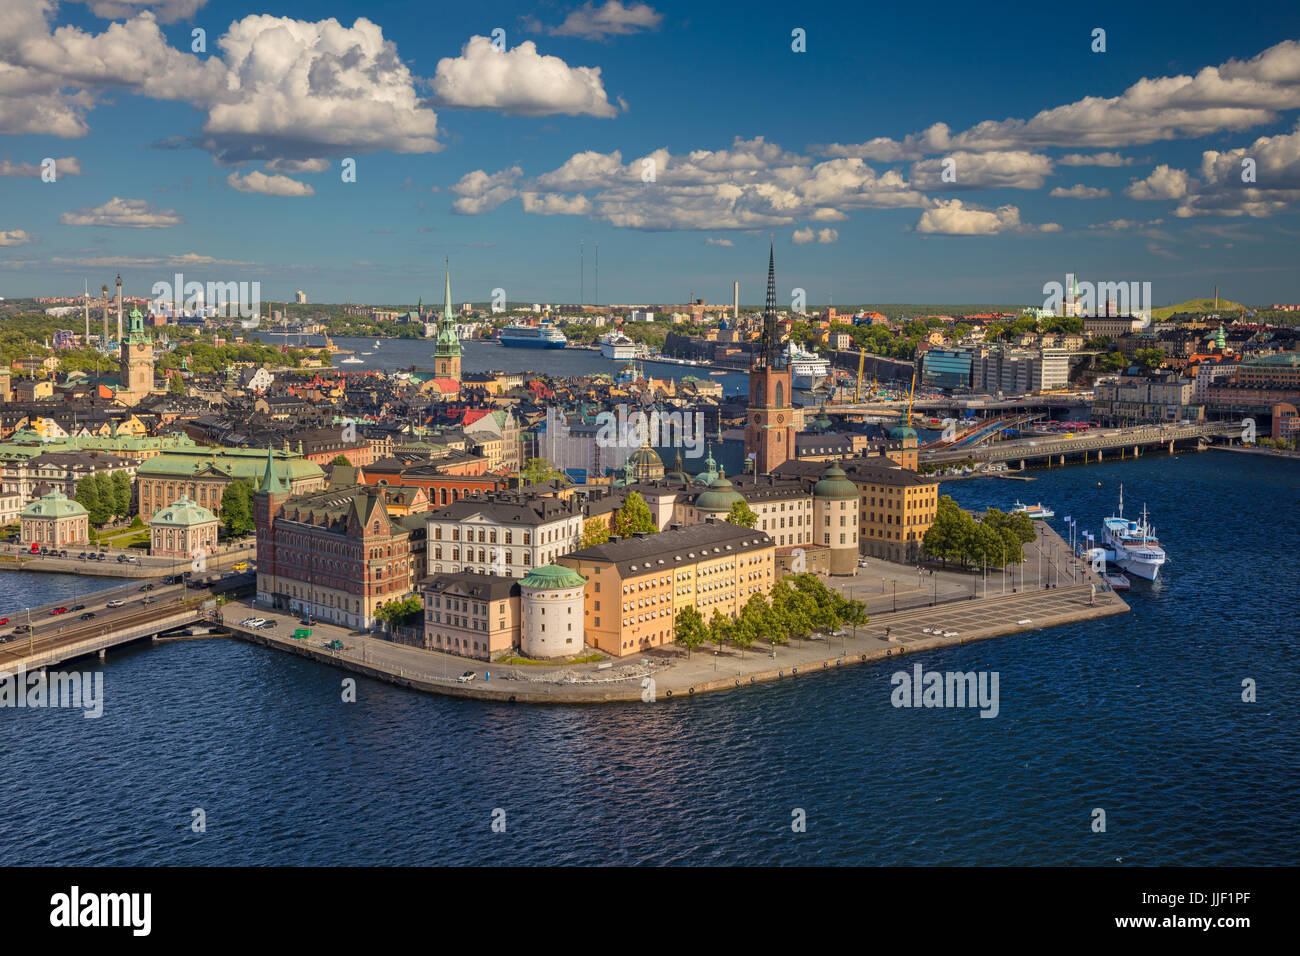 Estocolmo. Imagen aérea de la ciudad vieja de Estocolmo, Suecia, durante día soleado. Foto de stock